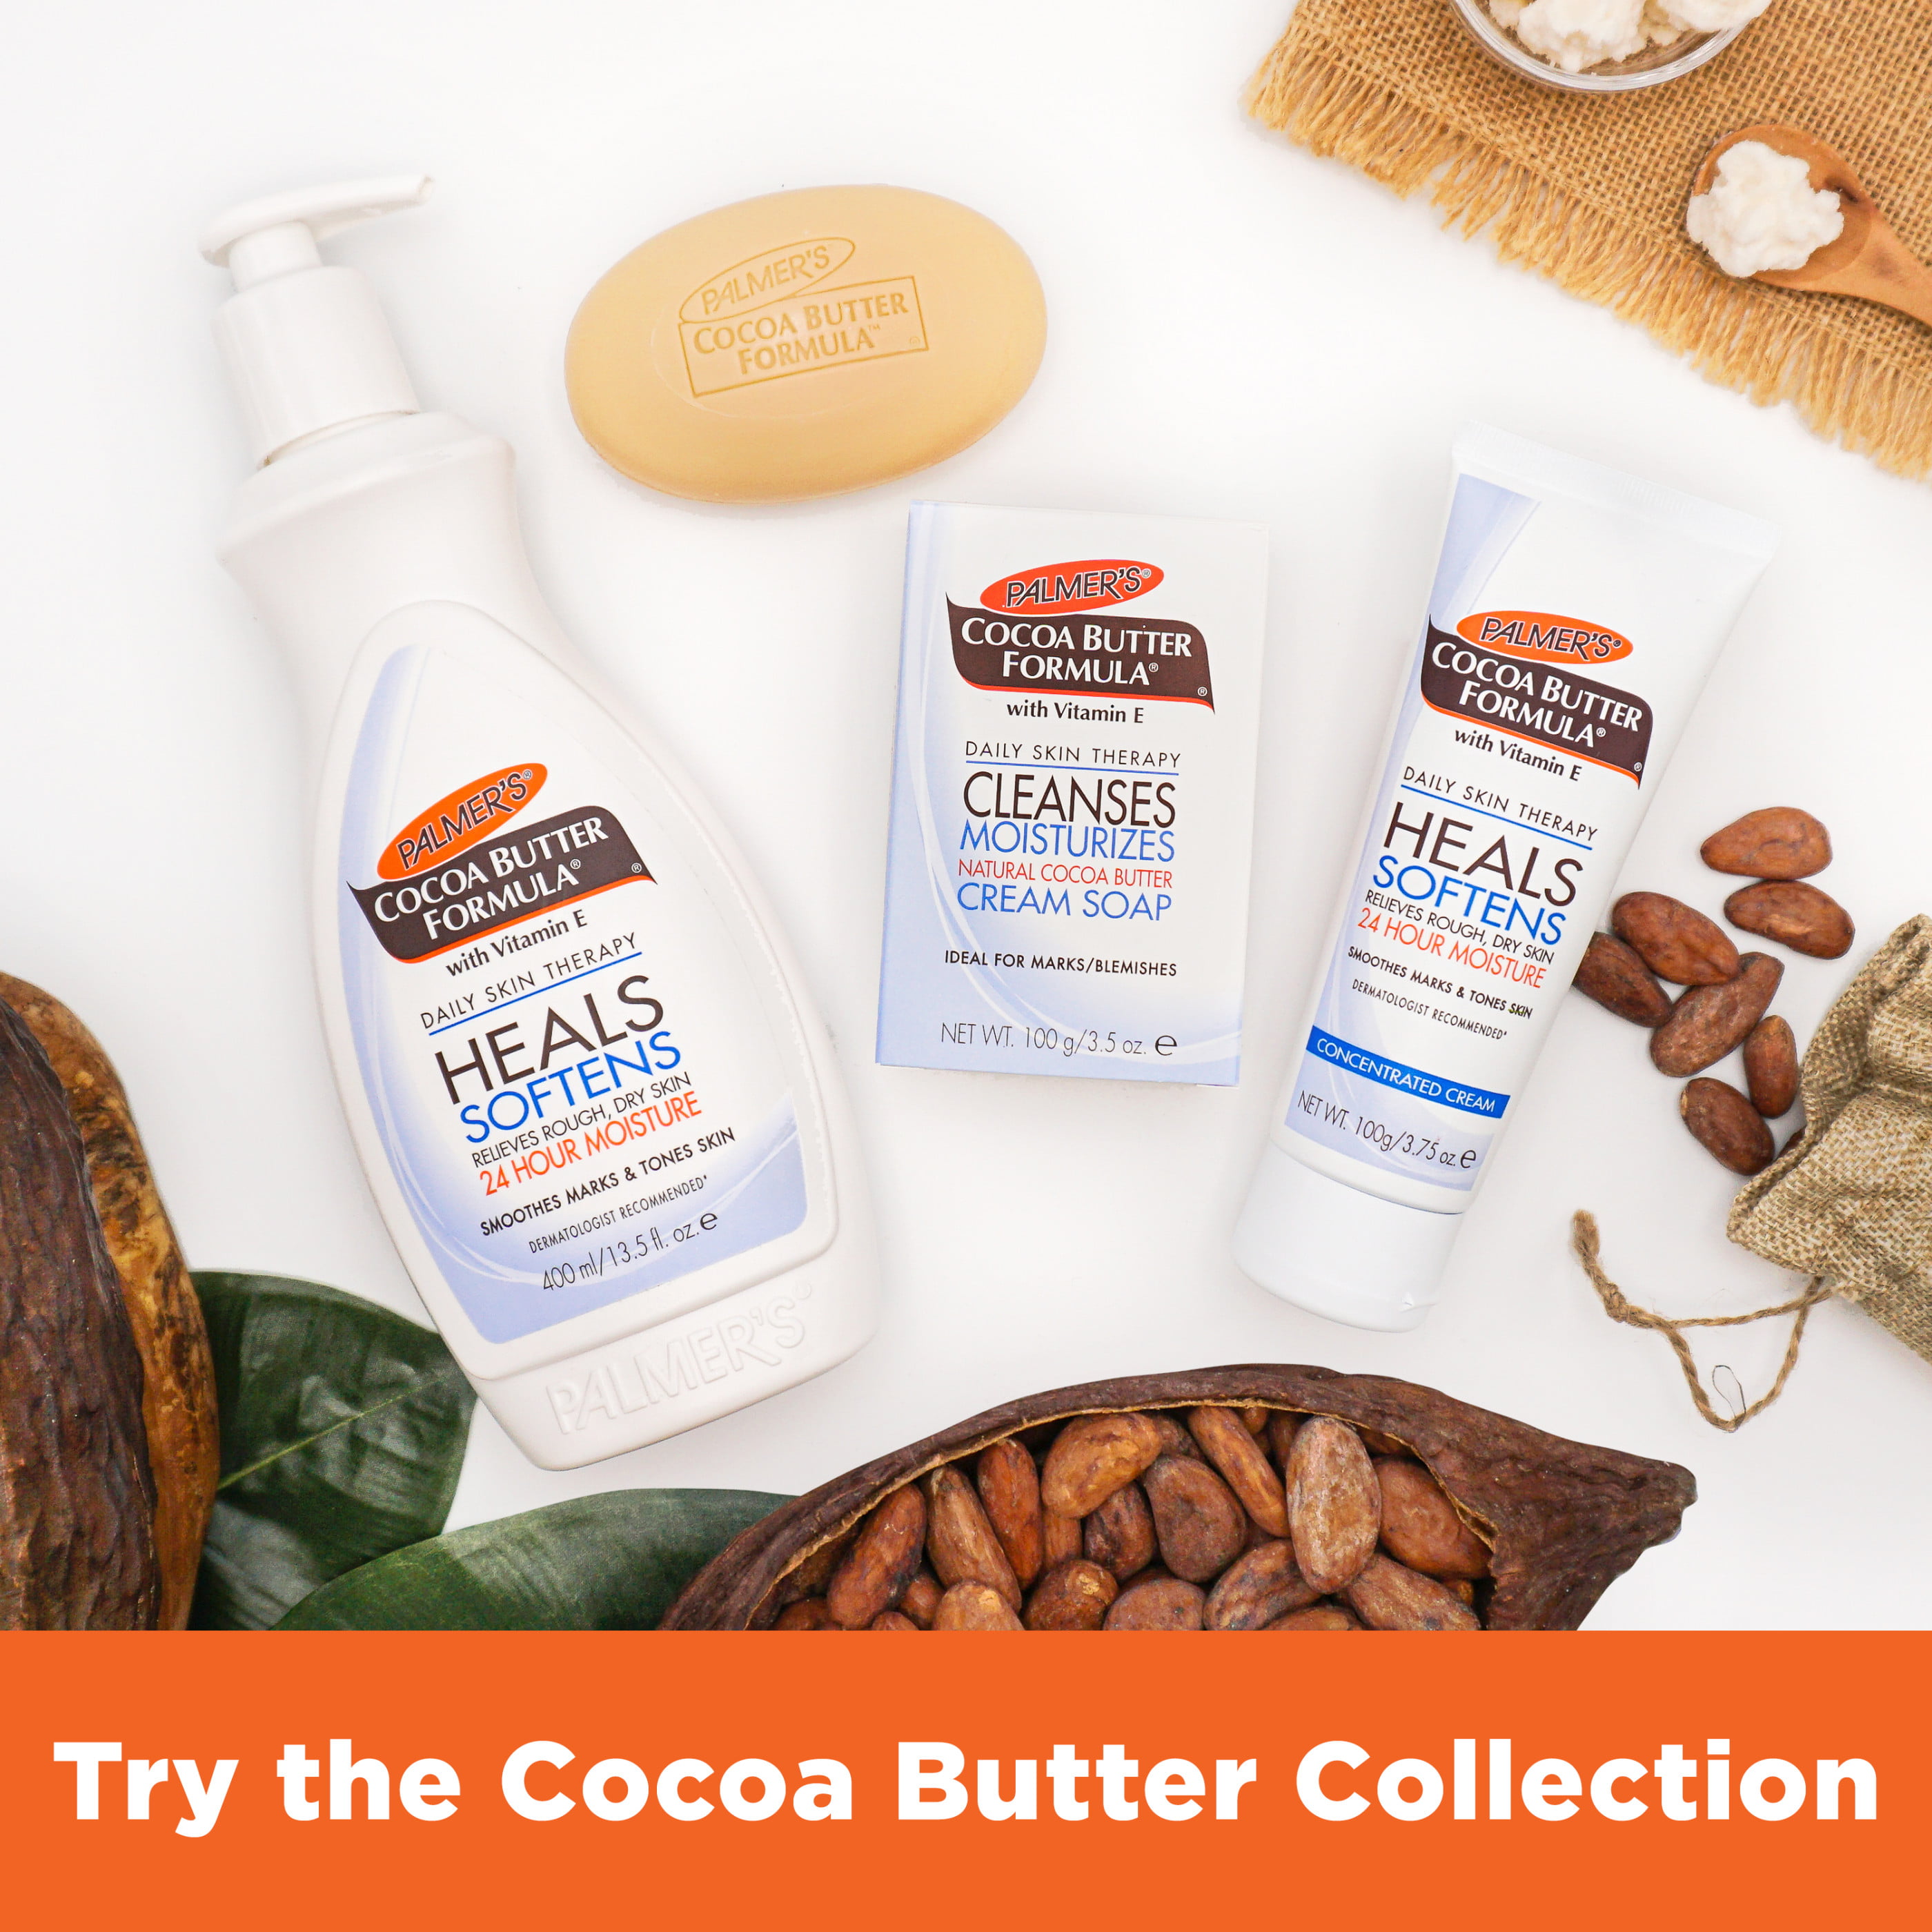 Palmer's Cocoa Butter Formula With Vitamin E - Shop Body Lotion at H-E-B